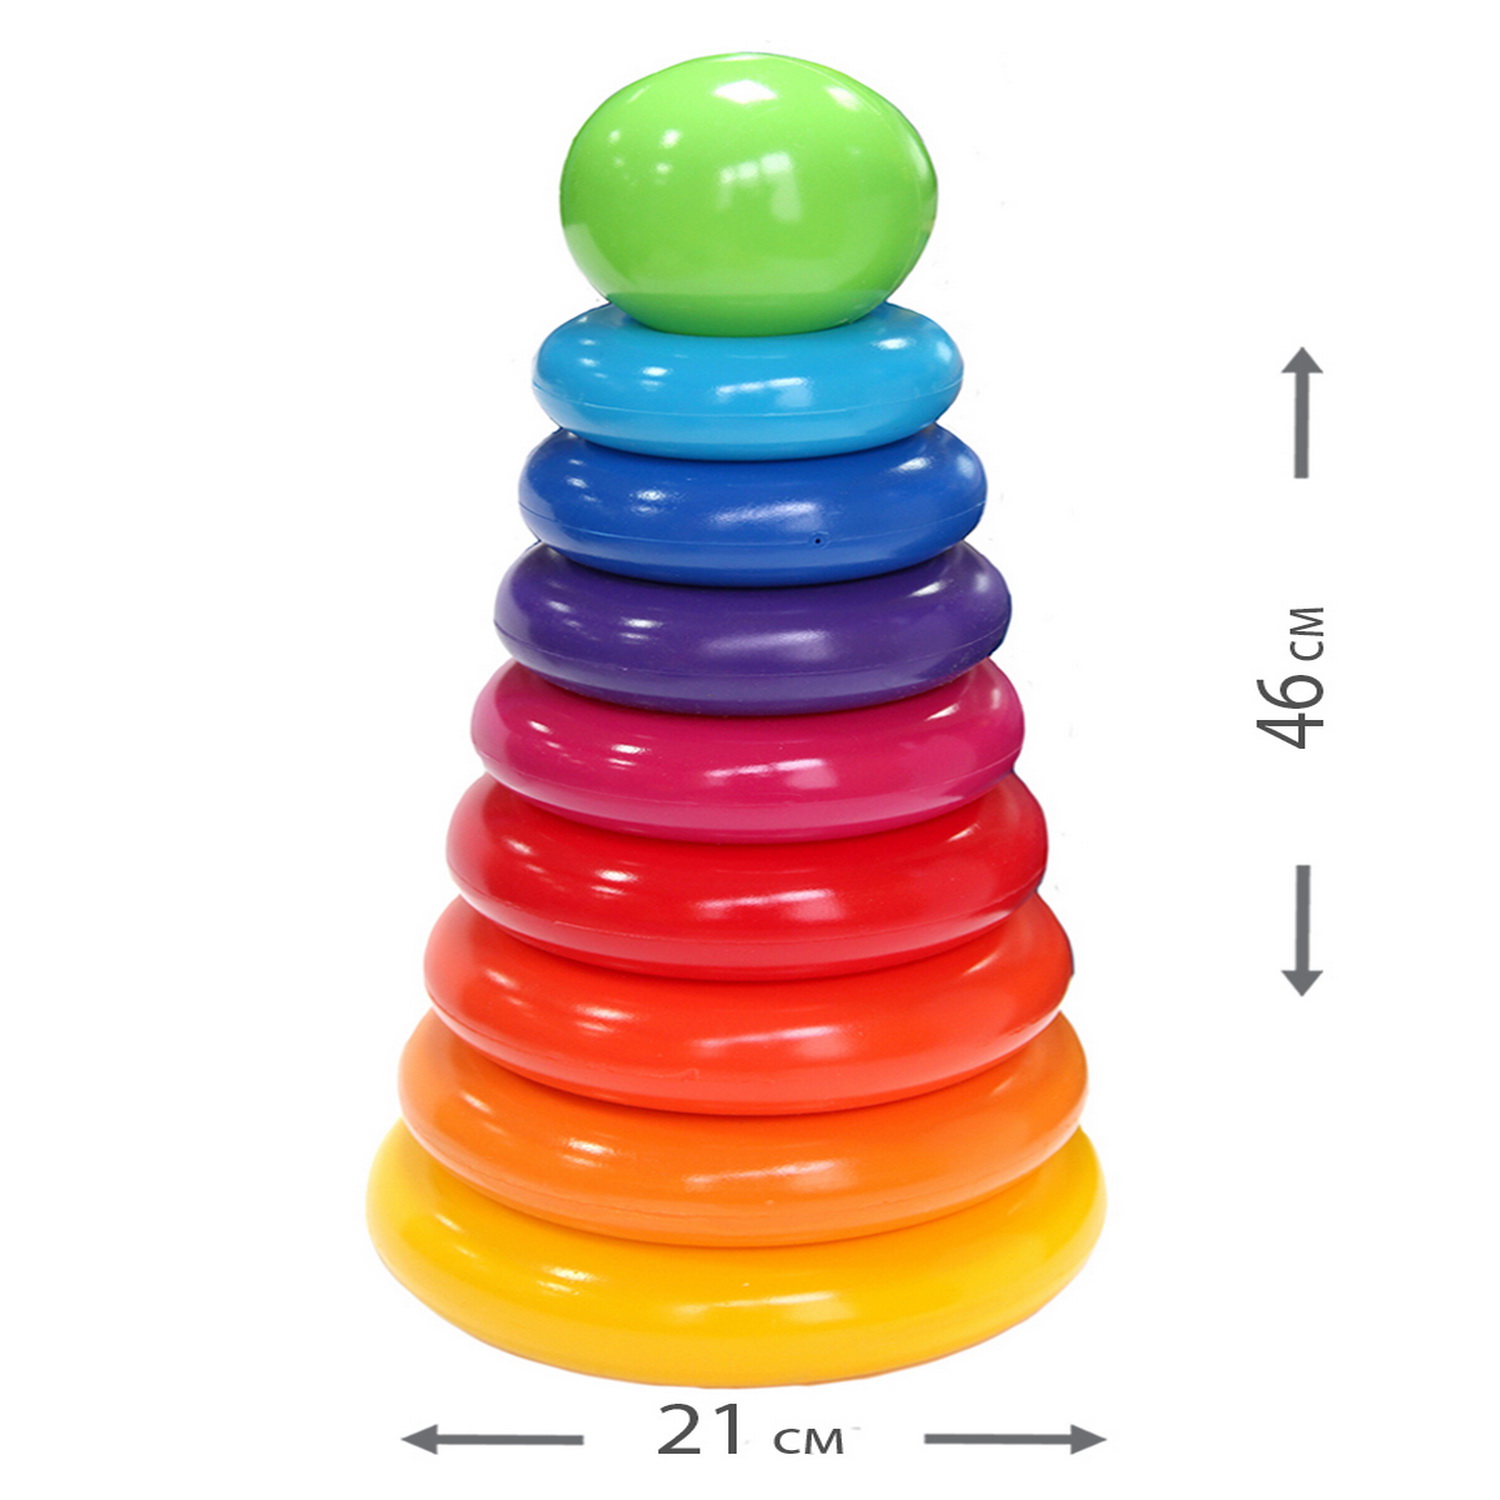 Пирамидка детская Green Plast Гигант 8 колец высота 46.4см развивающая игрушка - фото 2